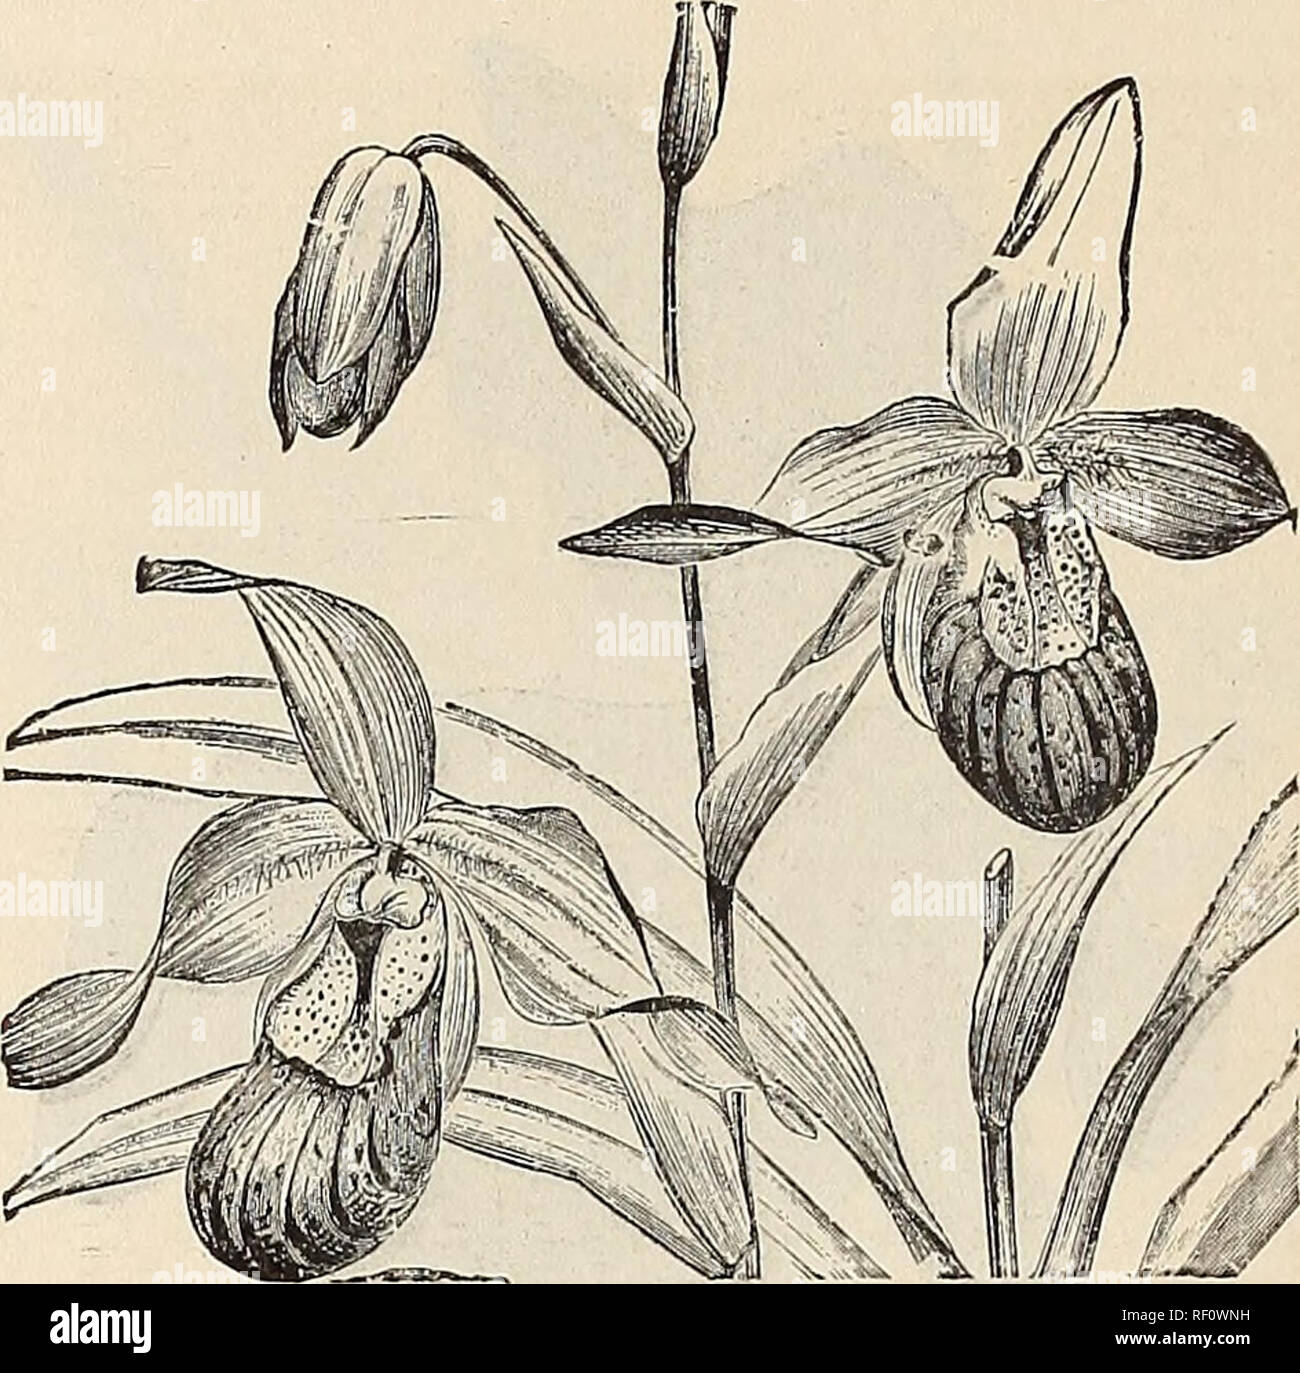 . Catalogue of orchids : orchids, palms and choice hothouse and greenhouse plants. Orchids, Catalogs; Plants, Ornamental, Catalogs; Commercial catalogs, New York (State), Utica. 8 WM. MATHEWS, UTICA, N. V.. CYPRIPEDIUM SEDENI. CYPRIPEDIUM, Continued. C. Dauthieri. C. Dayanum. C. Dominianum. C. rubescens. C. Druryi. C. Euryandrum. C. Godefreyse. C. grande. C. Harrisianum. C. elegans. C. &quot; nigrum. C. Haynaldianum. C. hirsutissimum. C. Hookeri. C. insigne. C. &quot; Chantini. C. &quot; alba marginata. C. &quot; Maulei. C. &quot; Shyletense. C. Io. C. Javanicum. C. &quot; majus. C. Lawrenceia Stock Photo